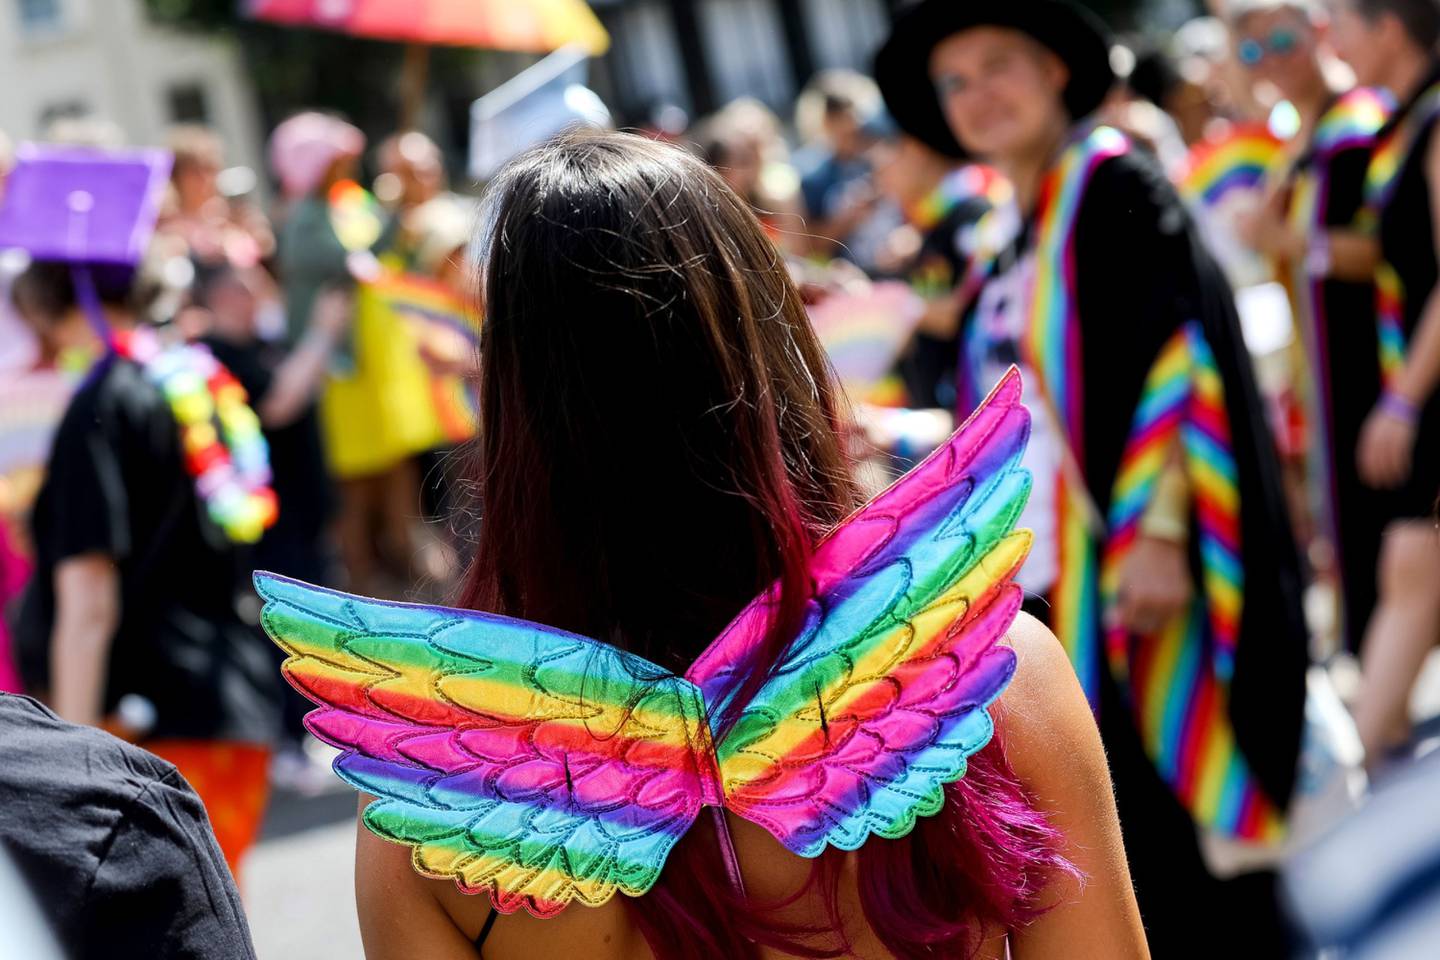 Un asistente al festival lleva alas de colores del arco iris, ya que participan en el Orgullo LGBTQ + Desfile de la Comunidad Amor, Protesta y Unidad durante el Orgullo de Brighton el 06 de agosto 2022 en Brighton, Inglaterra.